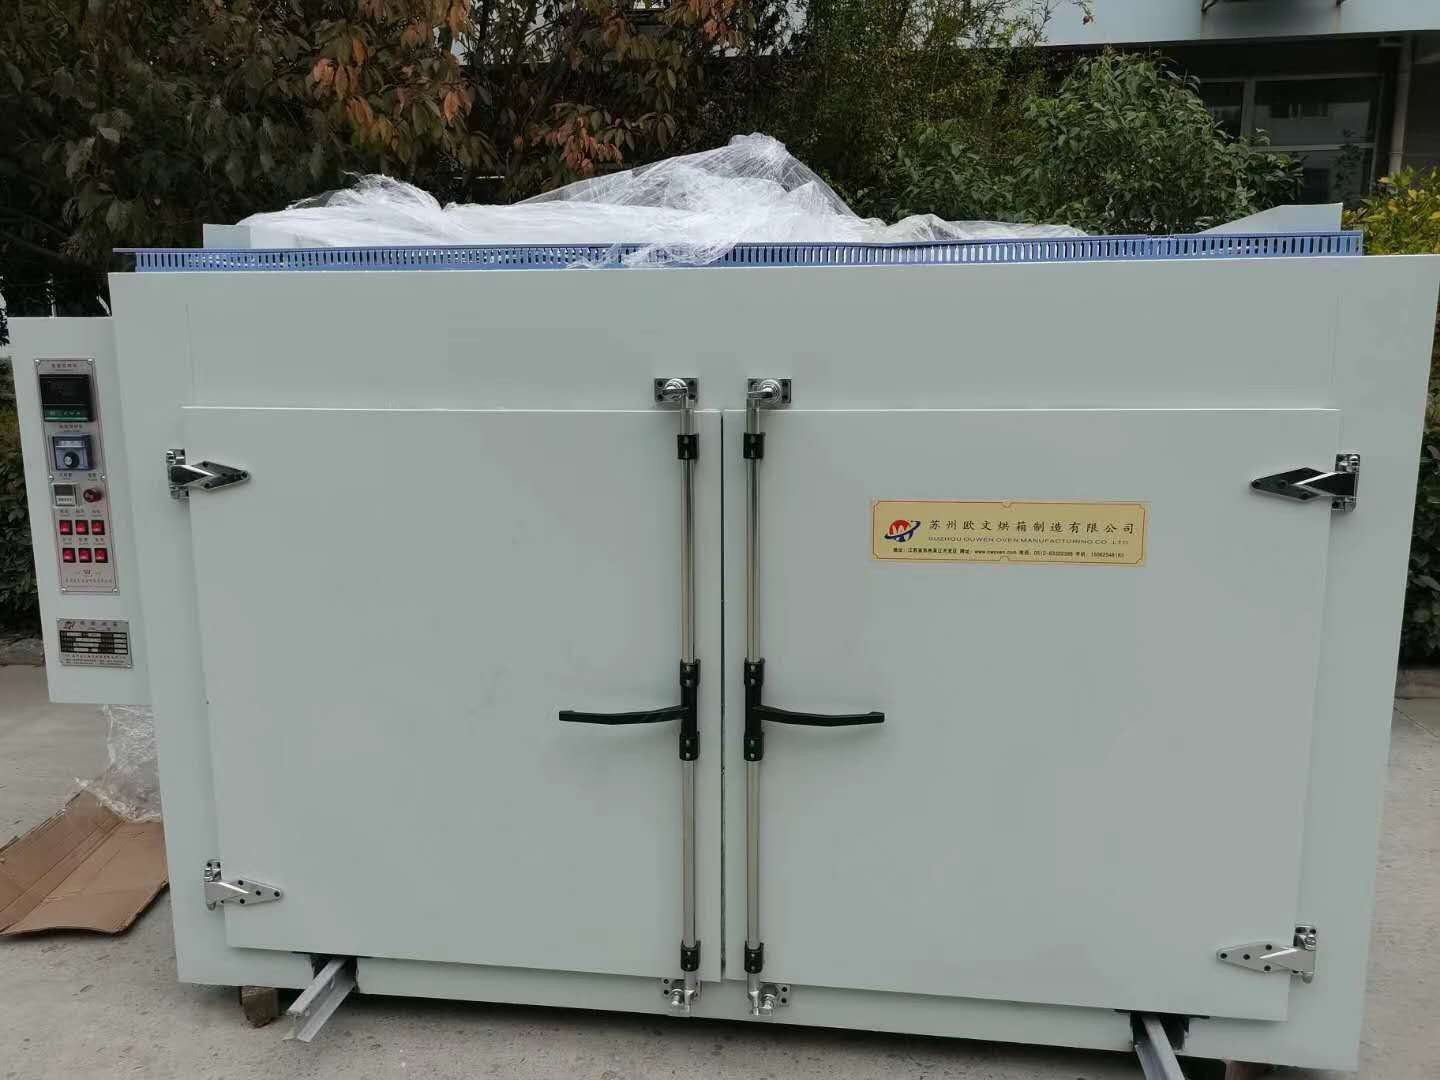  Zhimin compró un horno de gran tamaño para celdas de carga de gran capacidad